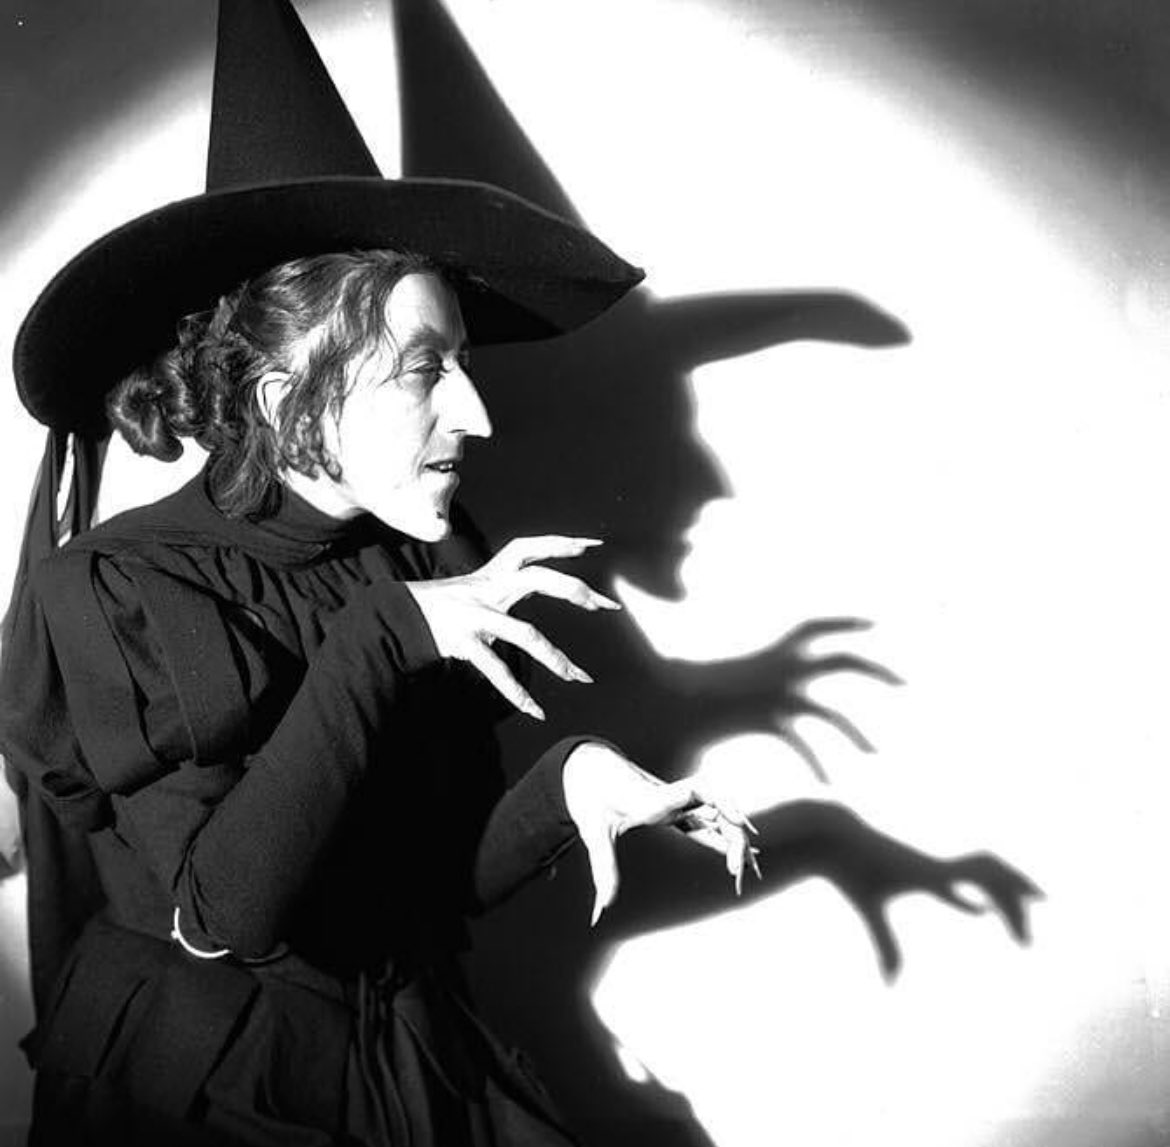 La bruja del Mago de Oz era en realidad una preocupada maestra de escuela